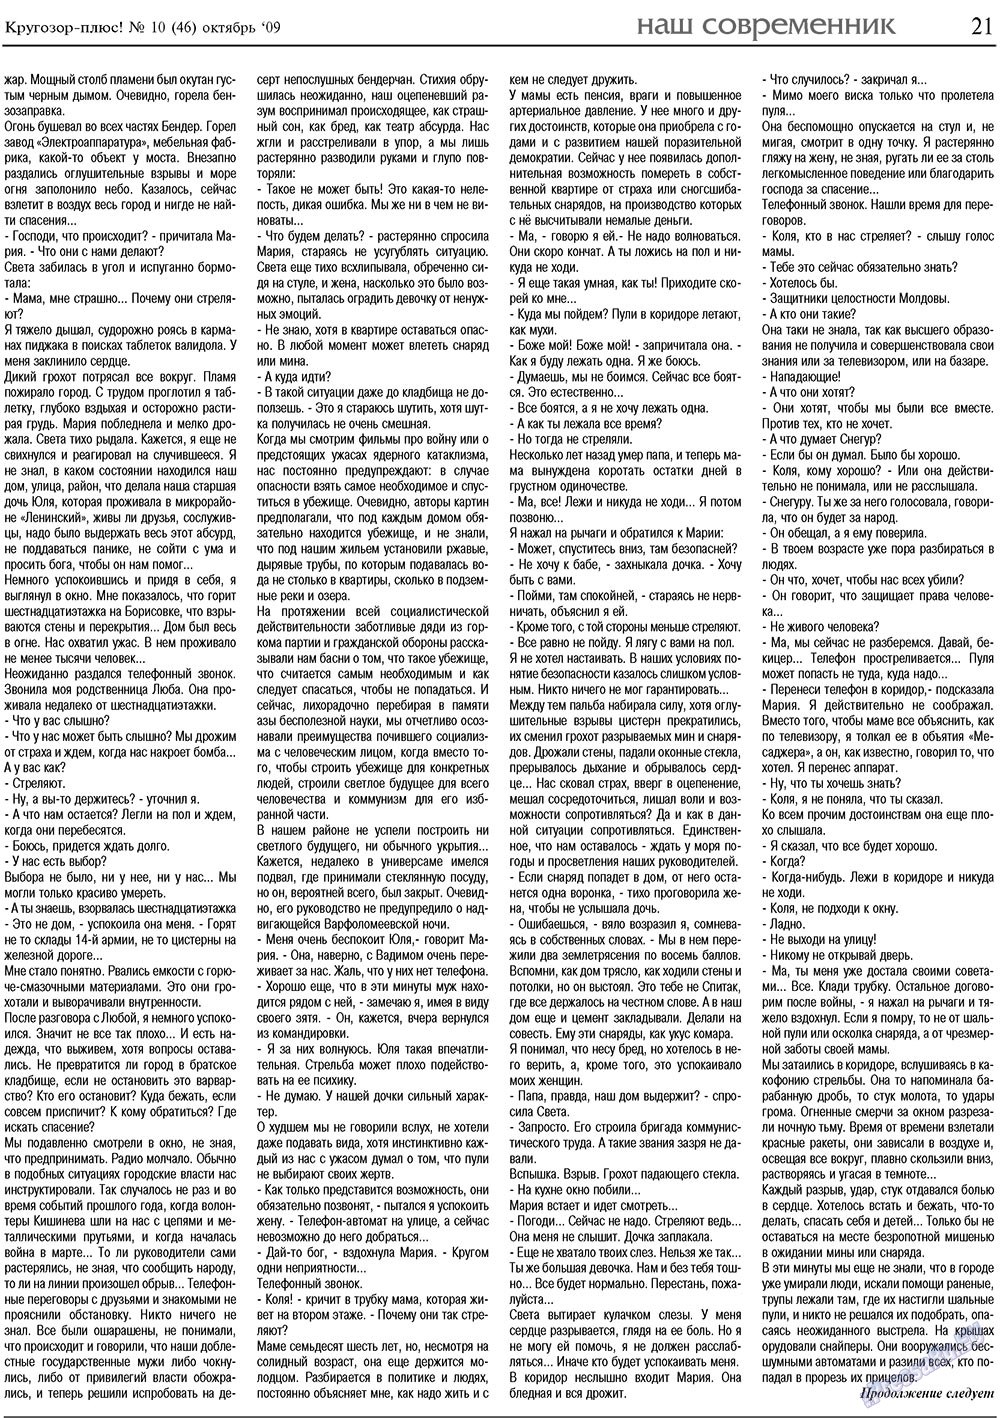 Кругозор плюс!, газета. 2009 №10 стр.21